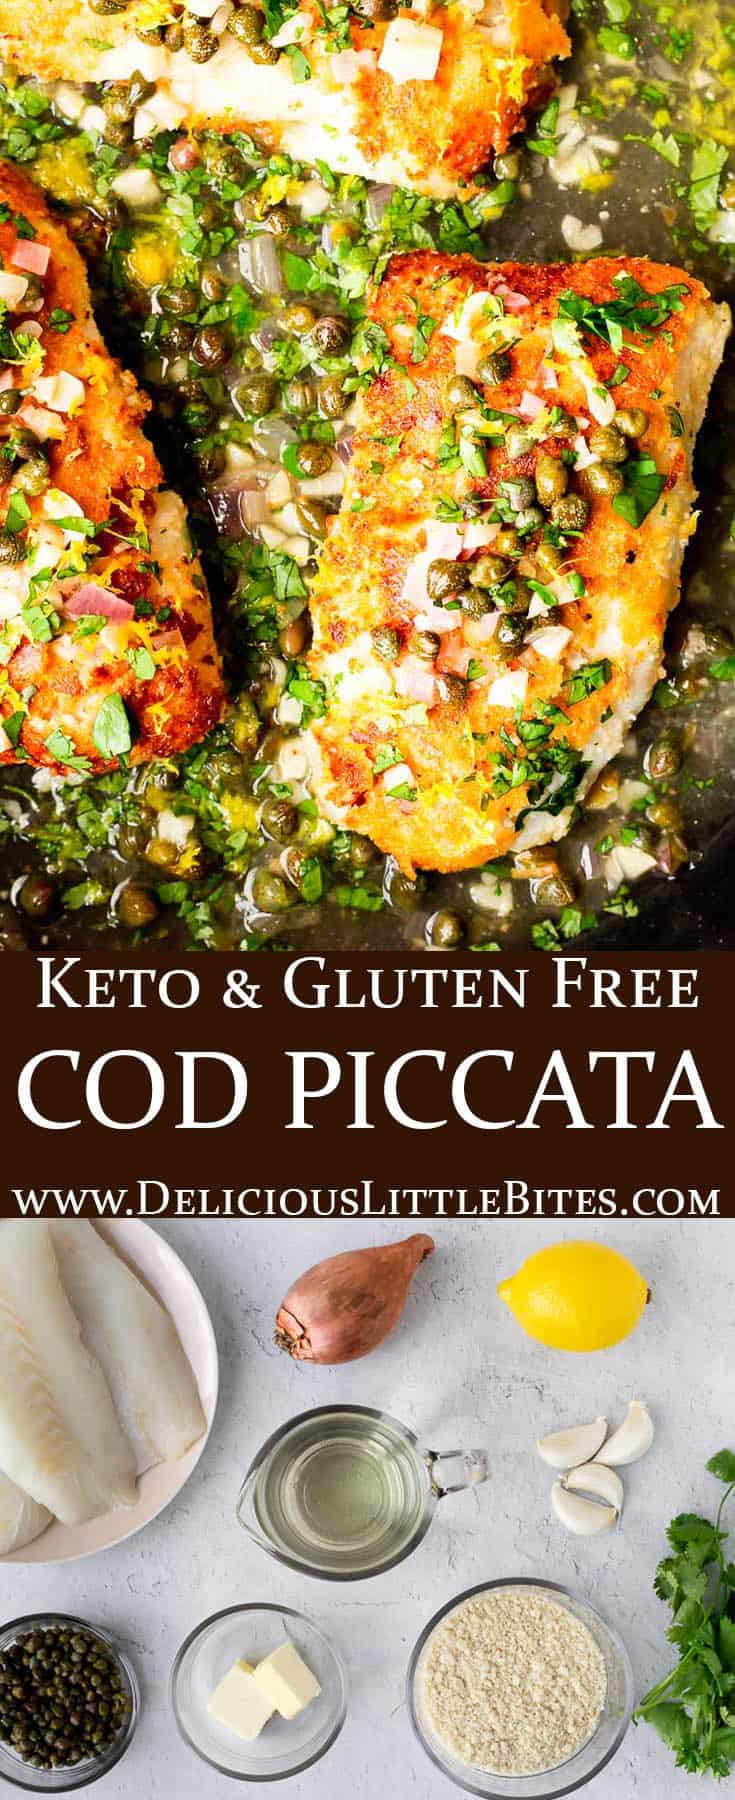 Cod Piccata - Delicious Little Bites